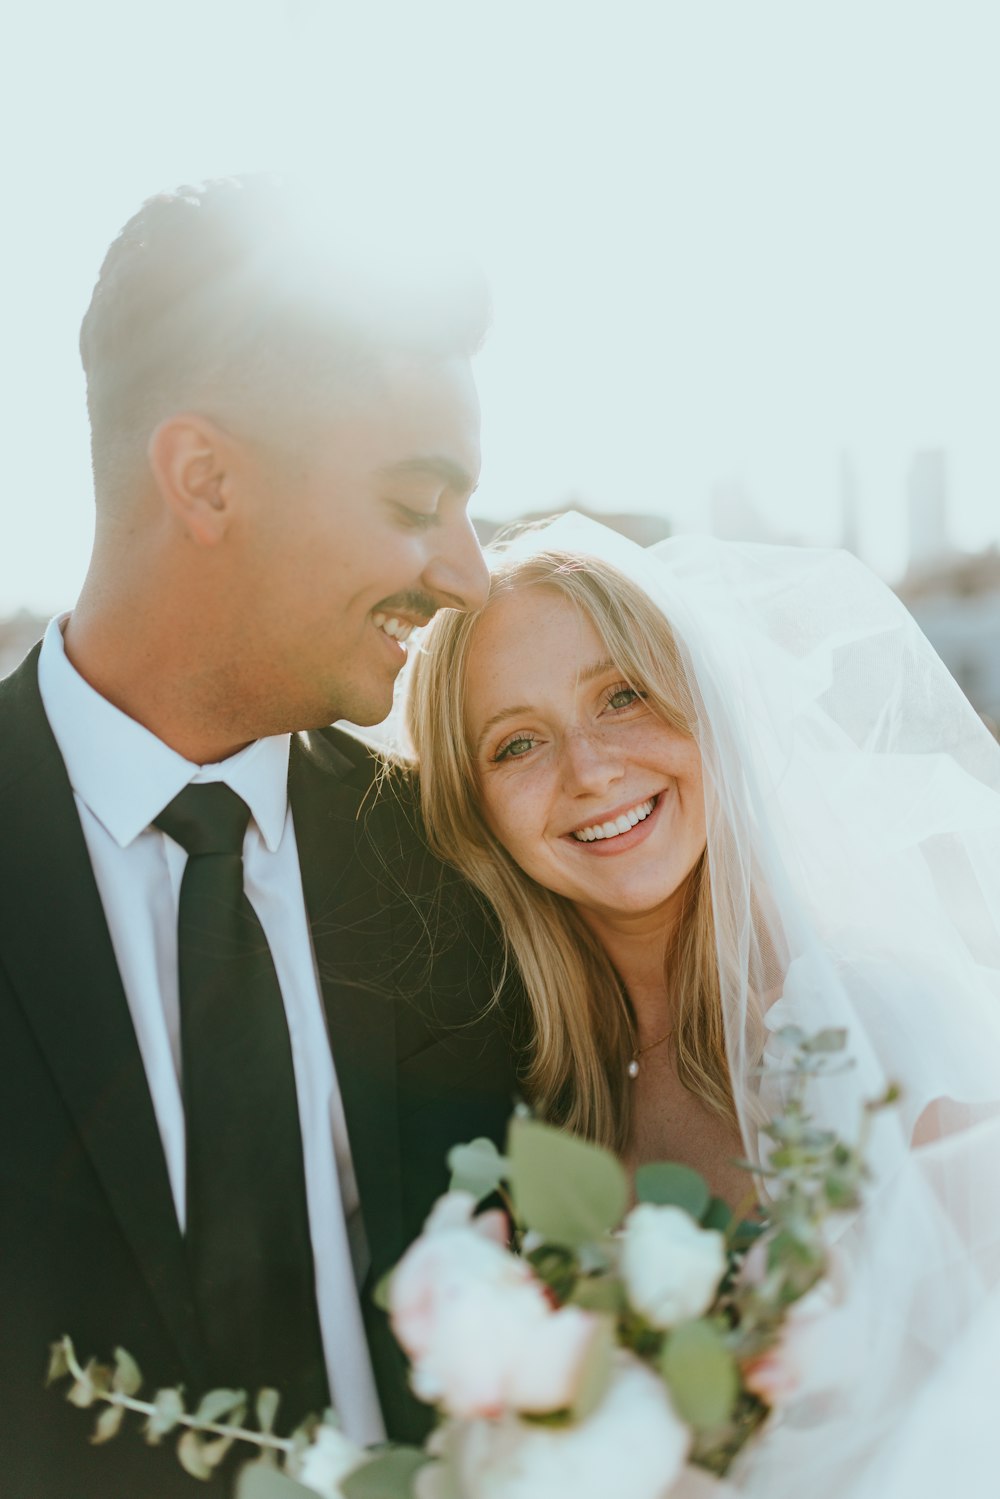 homem no terno preto beijando a mulher no vestido de noiva branco